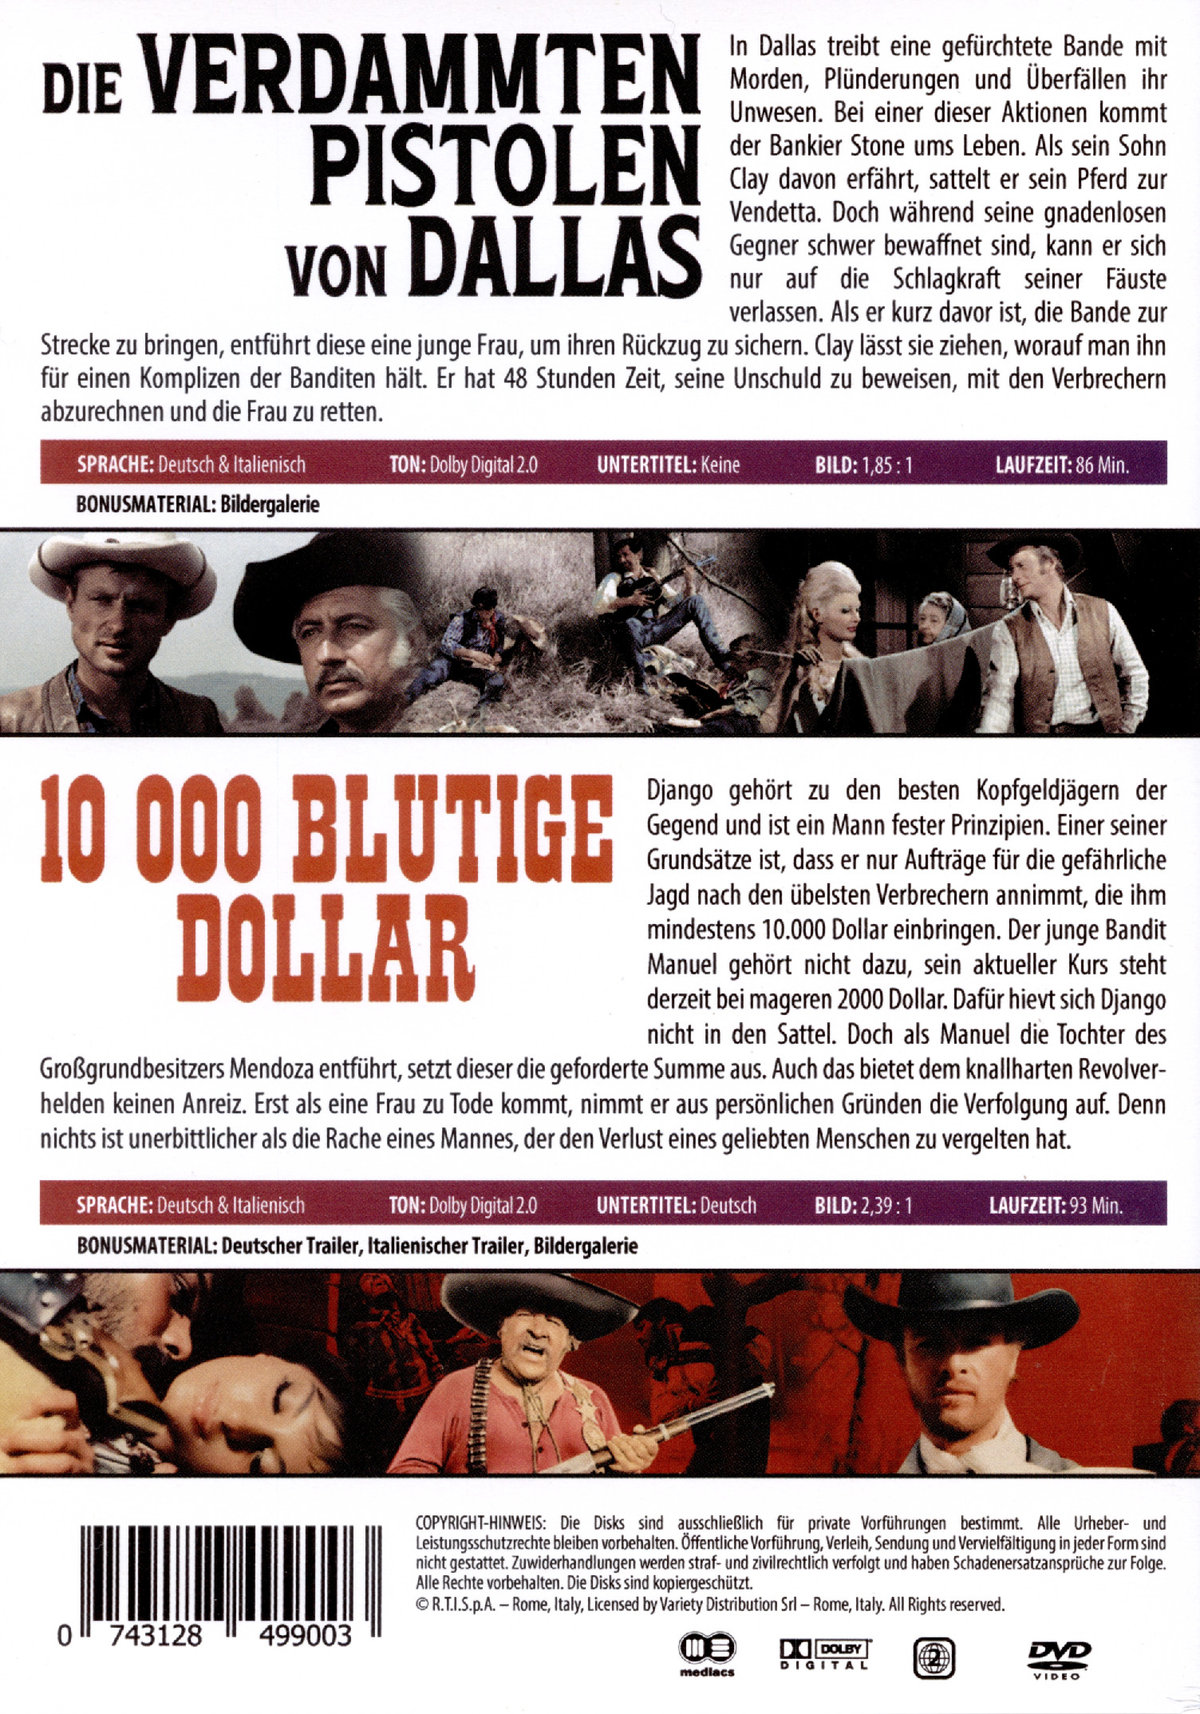 DIE VERDAMMTEN PISTOLEN VON DALLAS + 10.000 blutige Dollar - 2 Disc Uncut Western DVD Box  [2 DVDs]  (DVD)